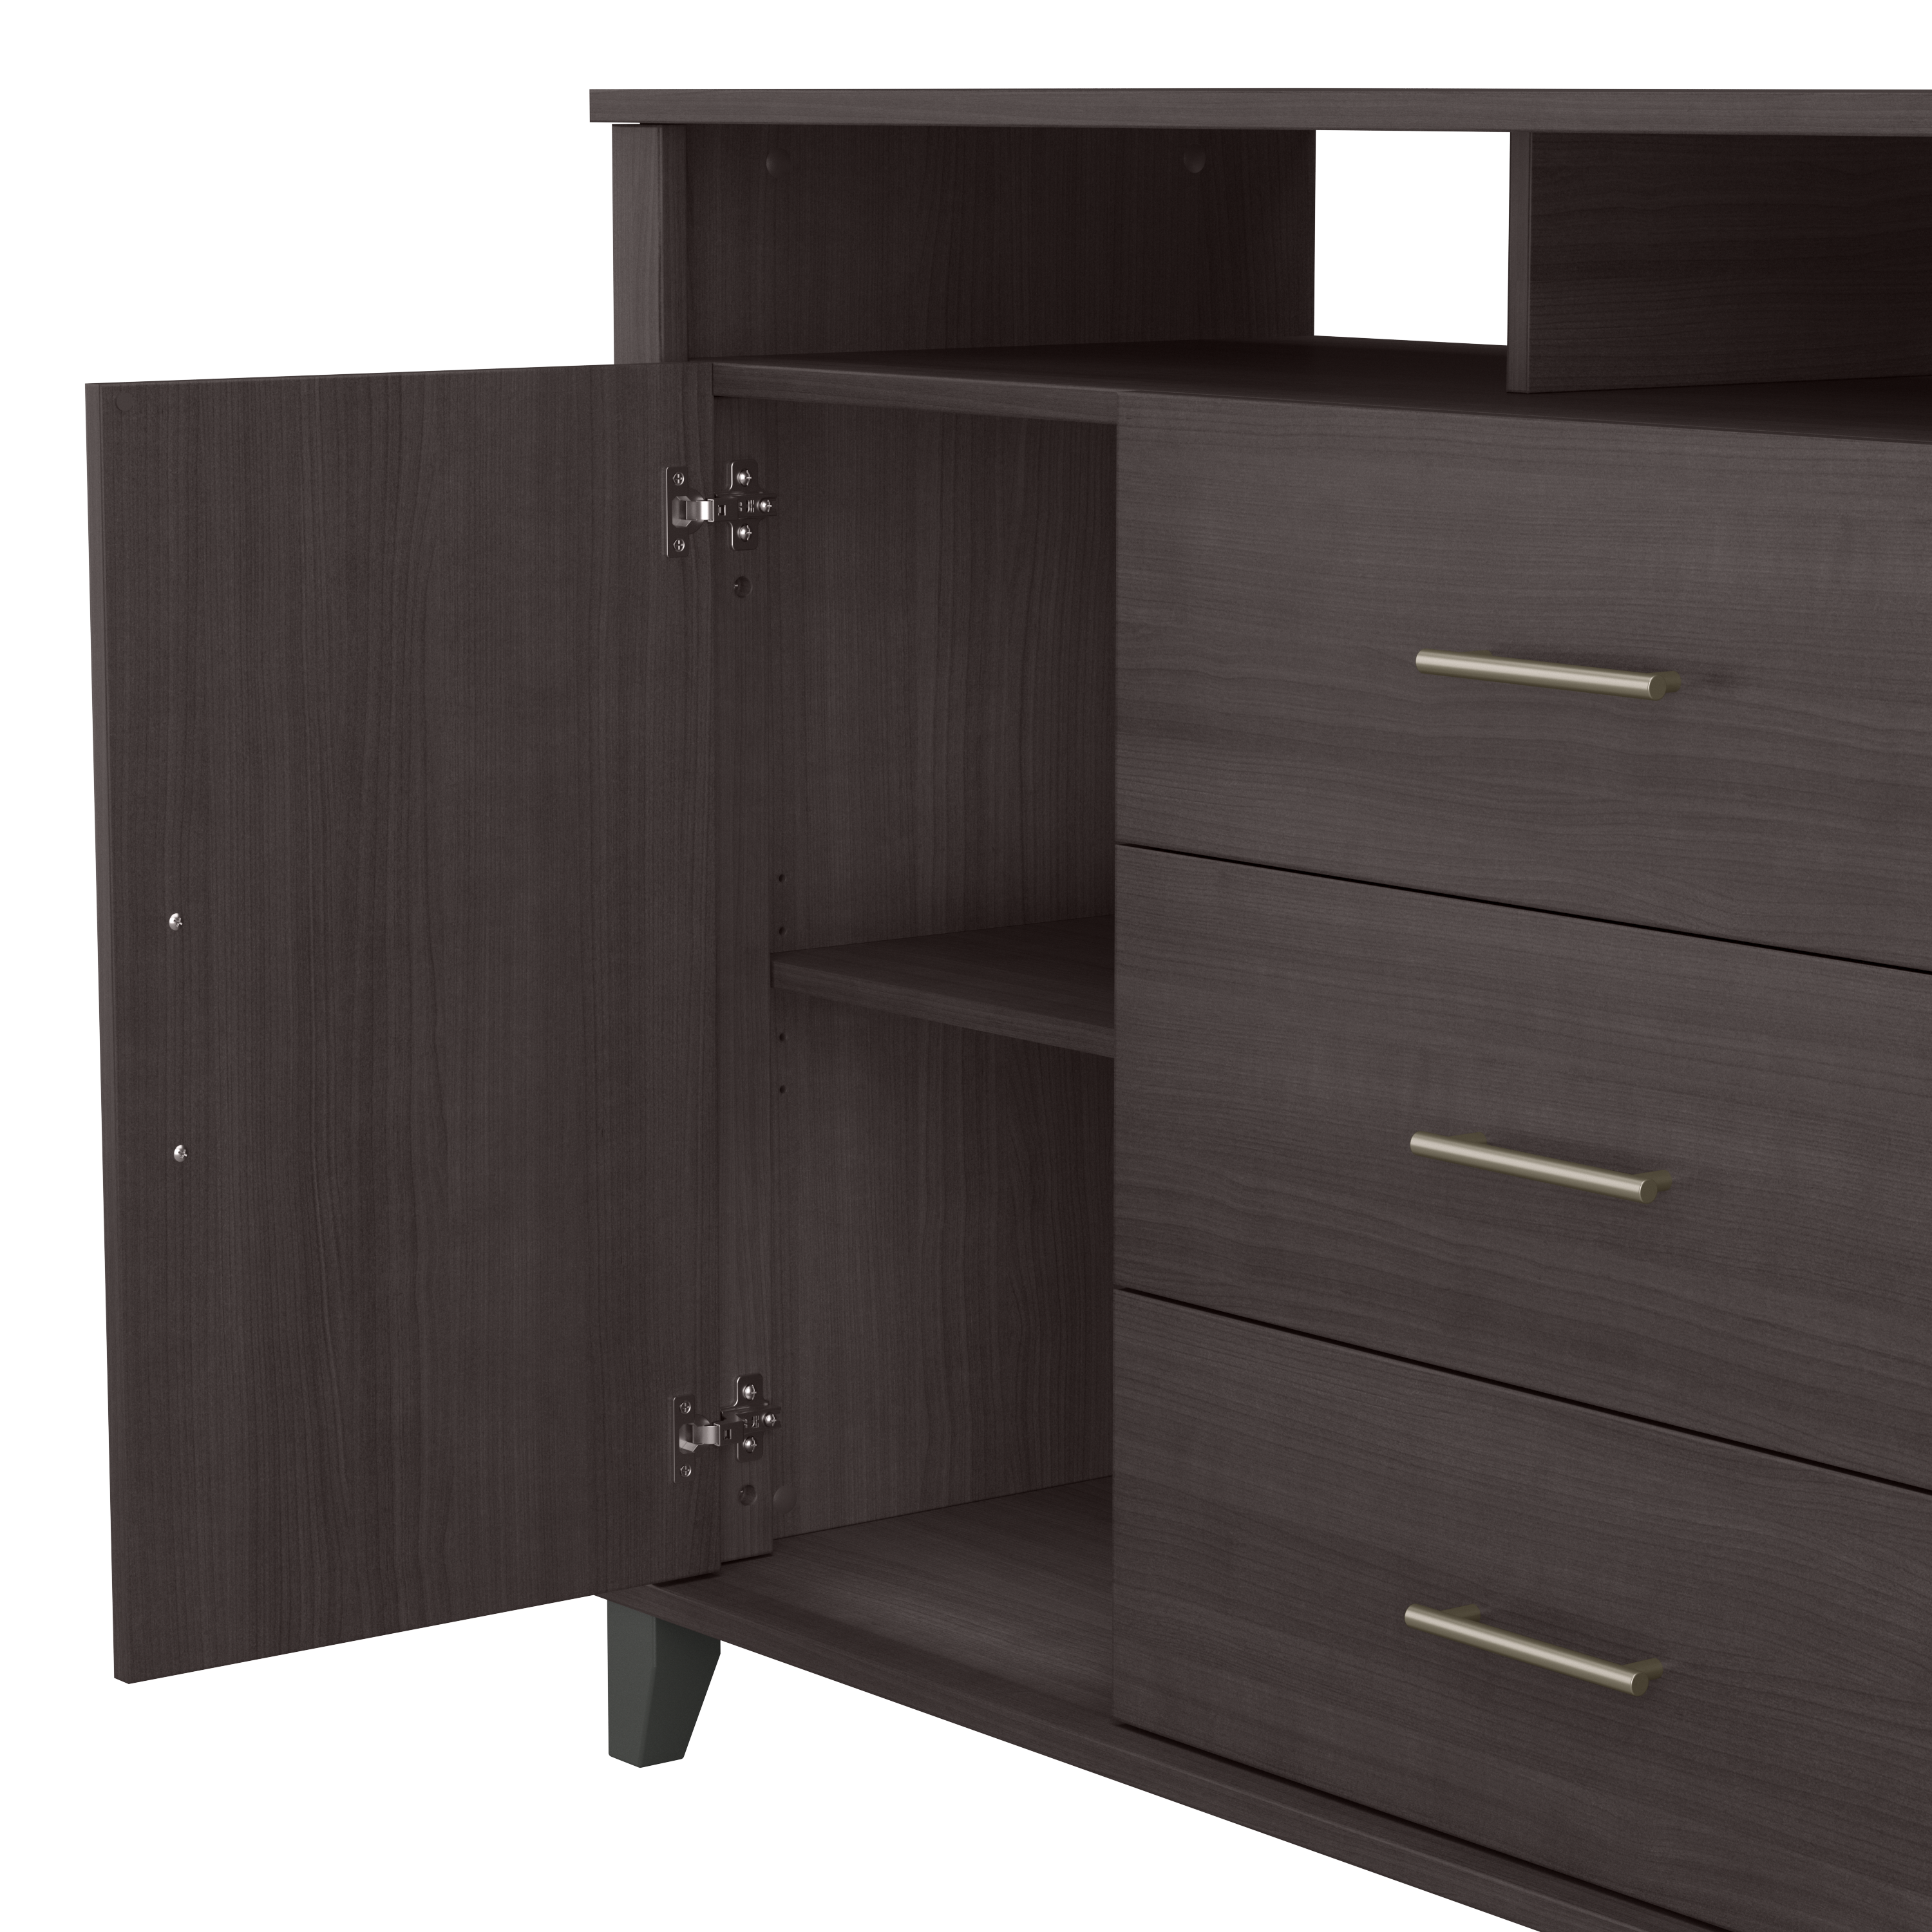 Shop Bush Furniture Somerset 3 Drawer Dresser and Bedroom TV Stand 04 STV148SGK #color_storm gray